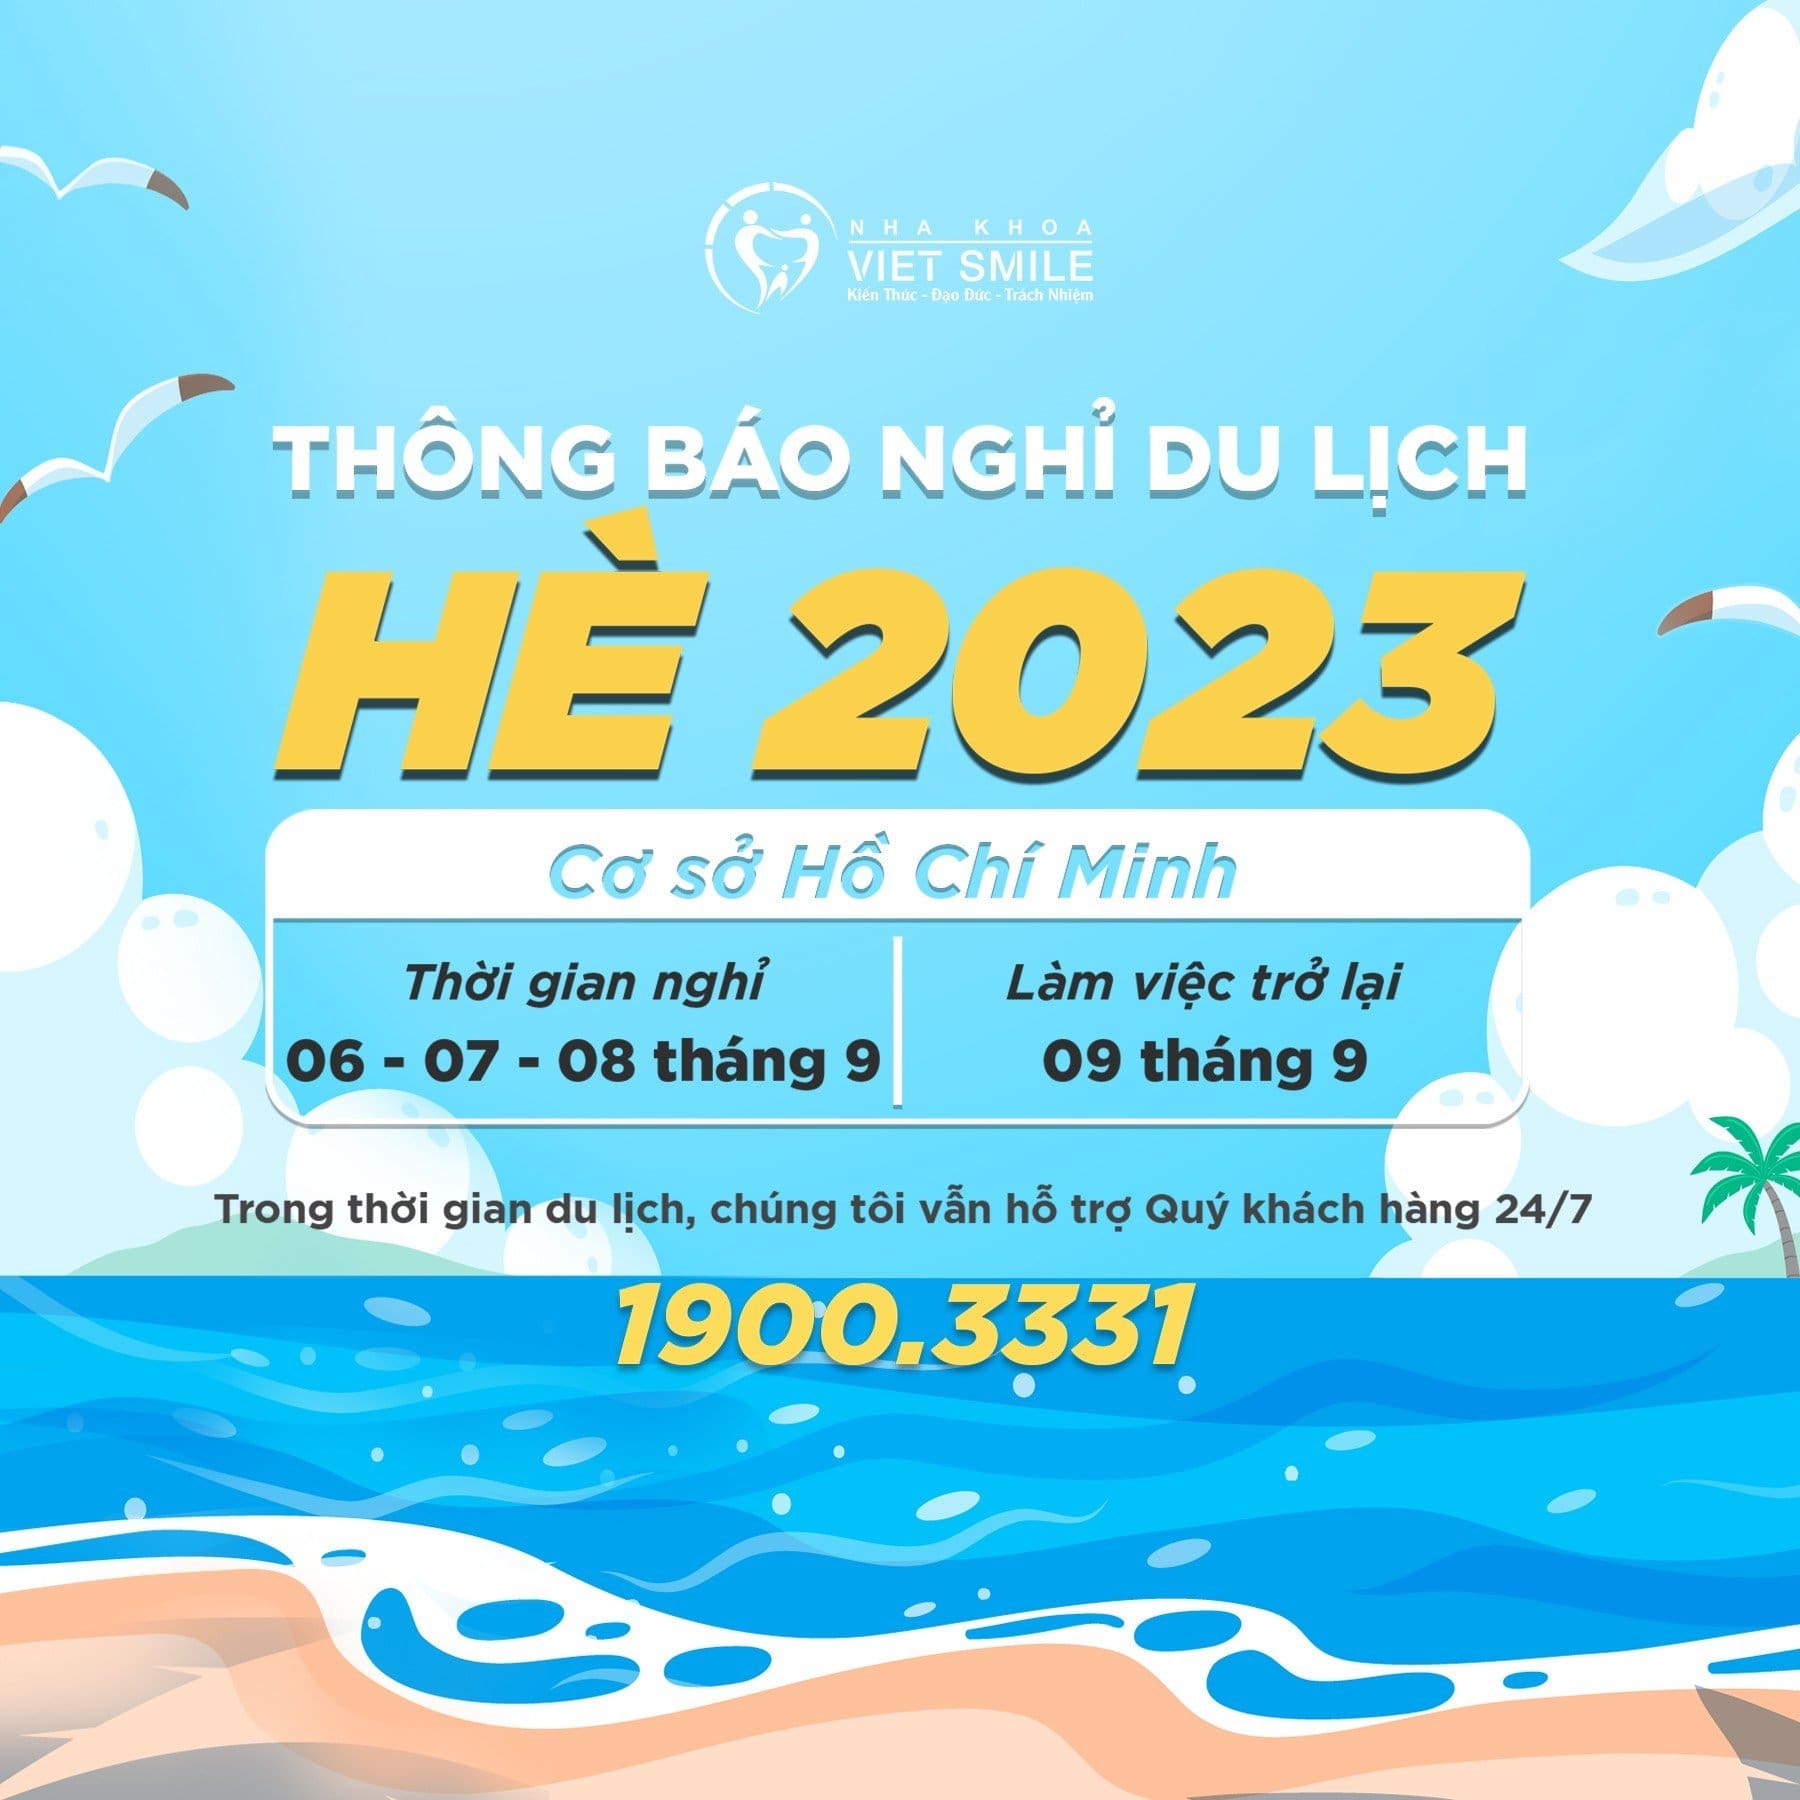 Thông báo nghỉ du lịch hè cơ sở Hồ Chí Minh